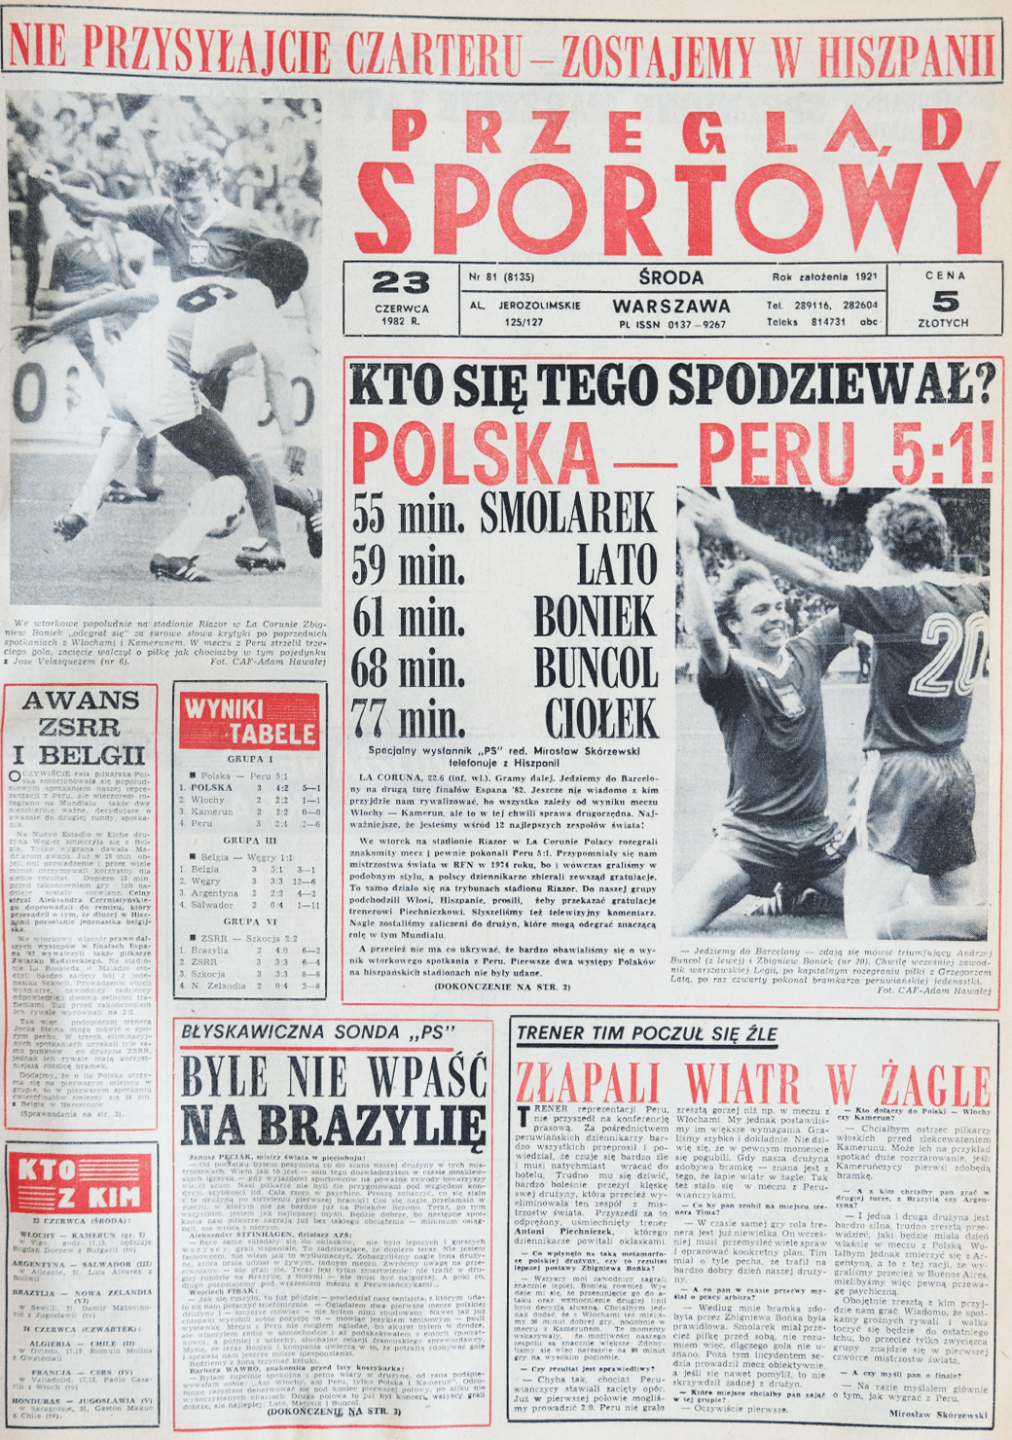 Okładka przeglądu sportowego po meczu Polska - Peru (22.06.1982)